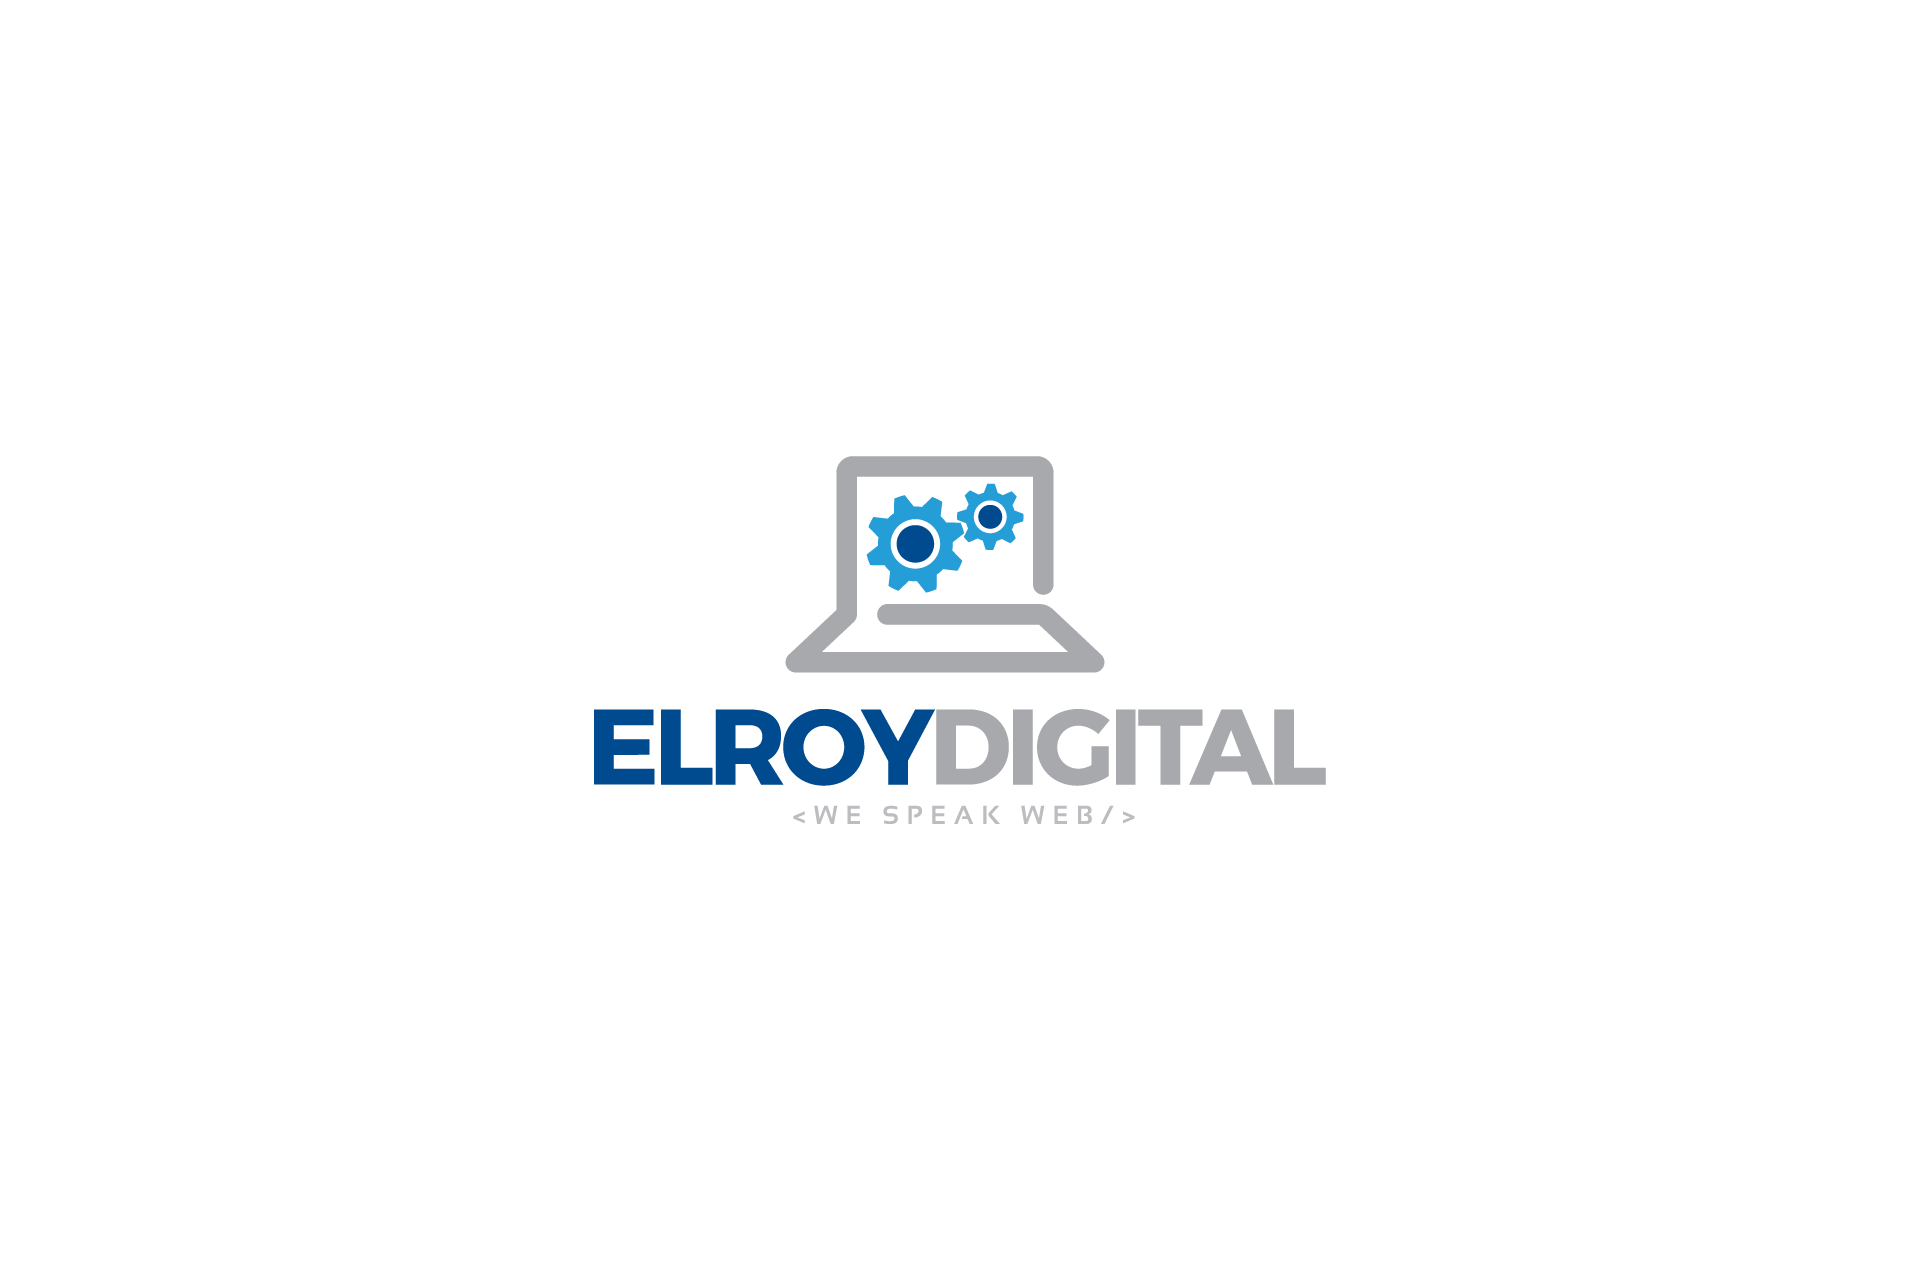 Elory Digital